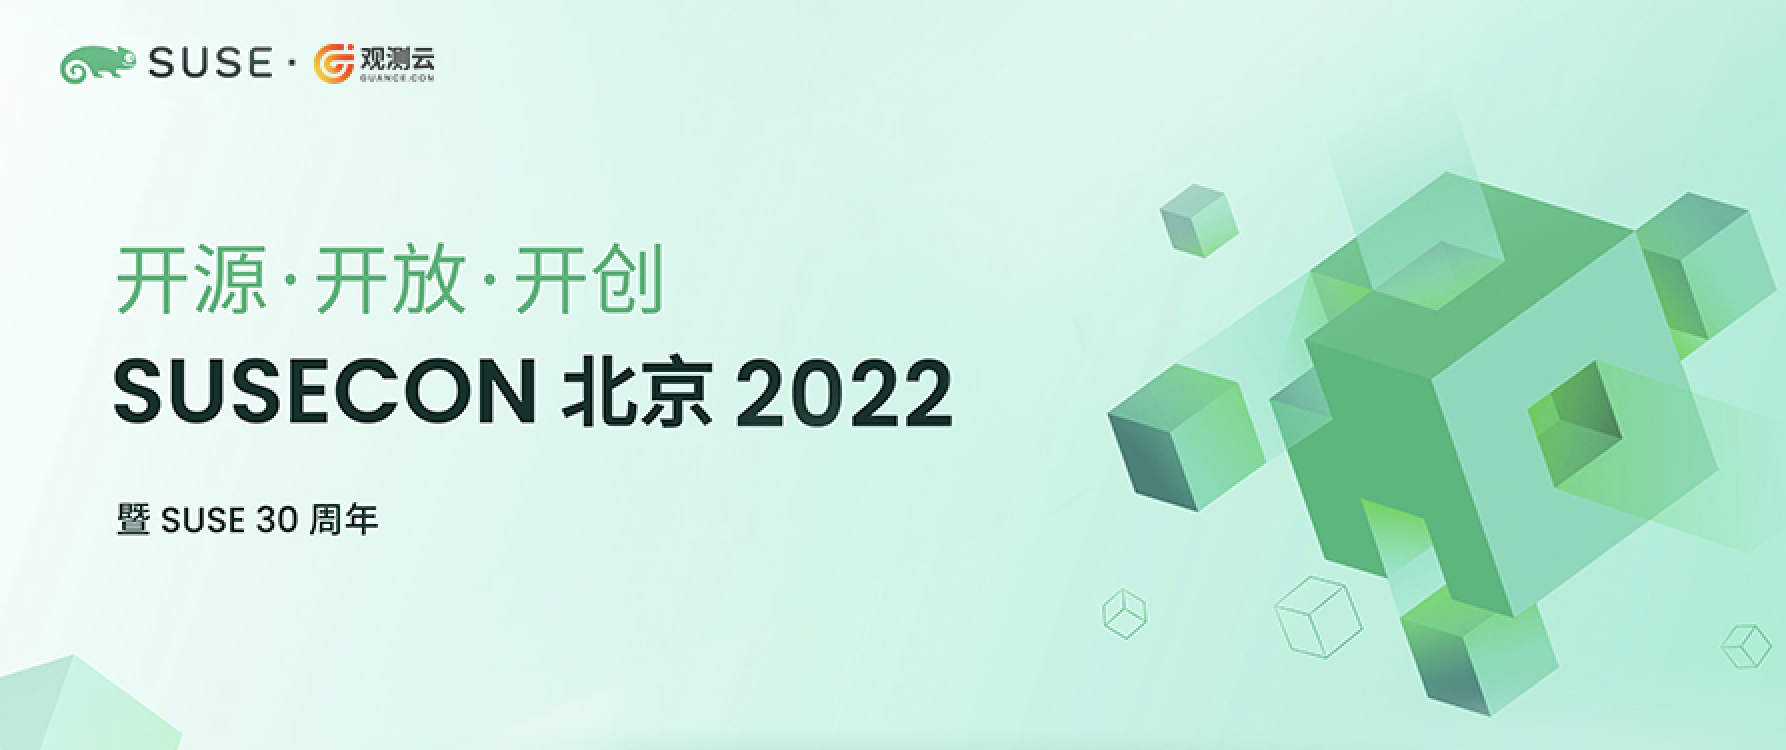 开源无界 携手共创｜观测云参加 SUSECON 2022 北京开源技术峰会